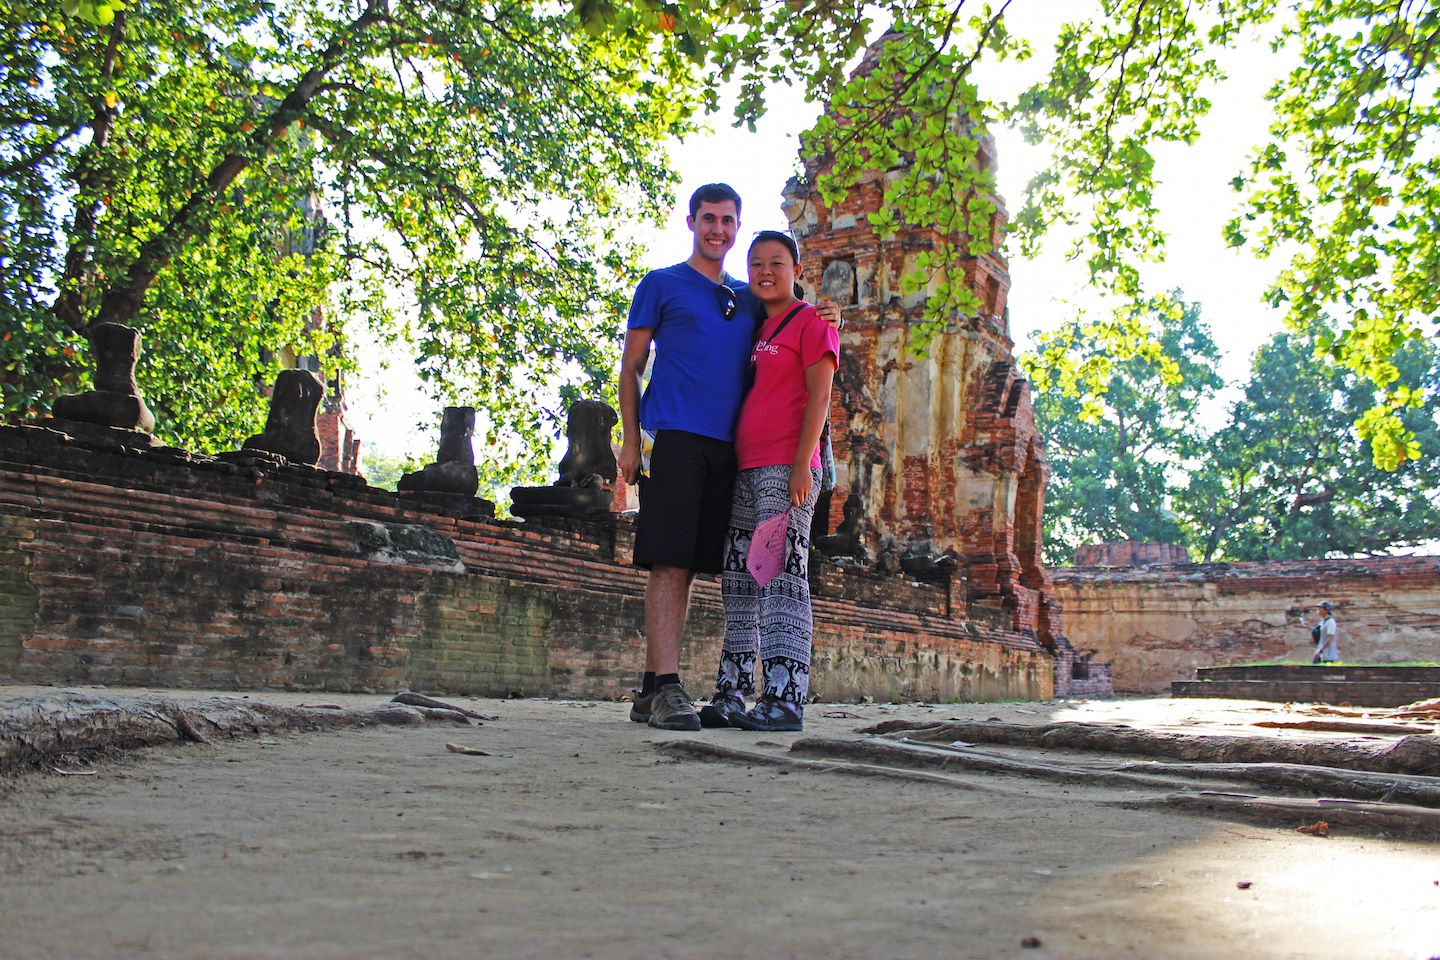 Julie and Carlos at Buddha face at Wat Mahathat, Ayutthaya